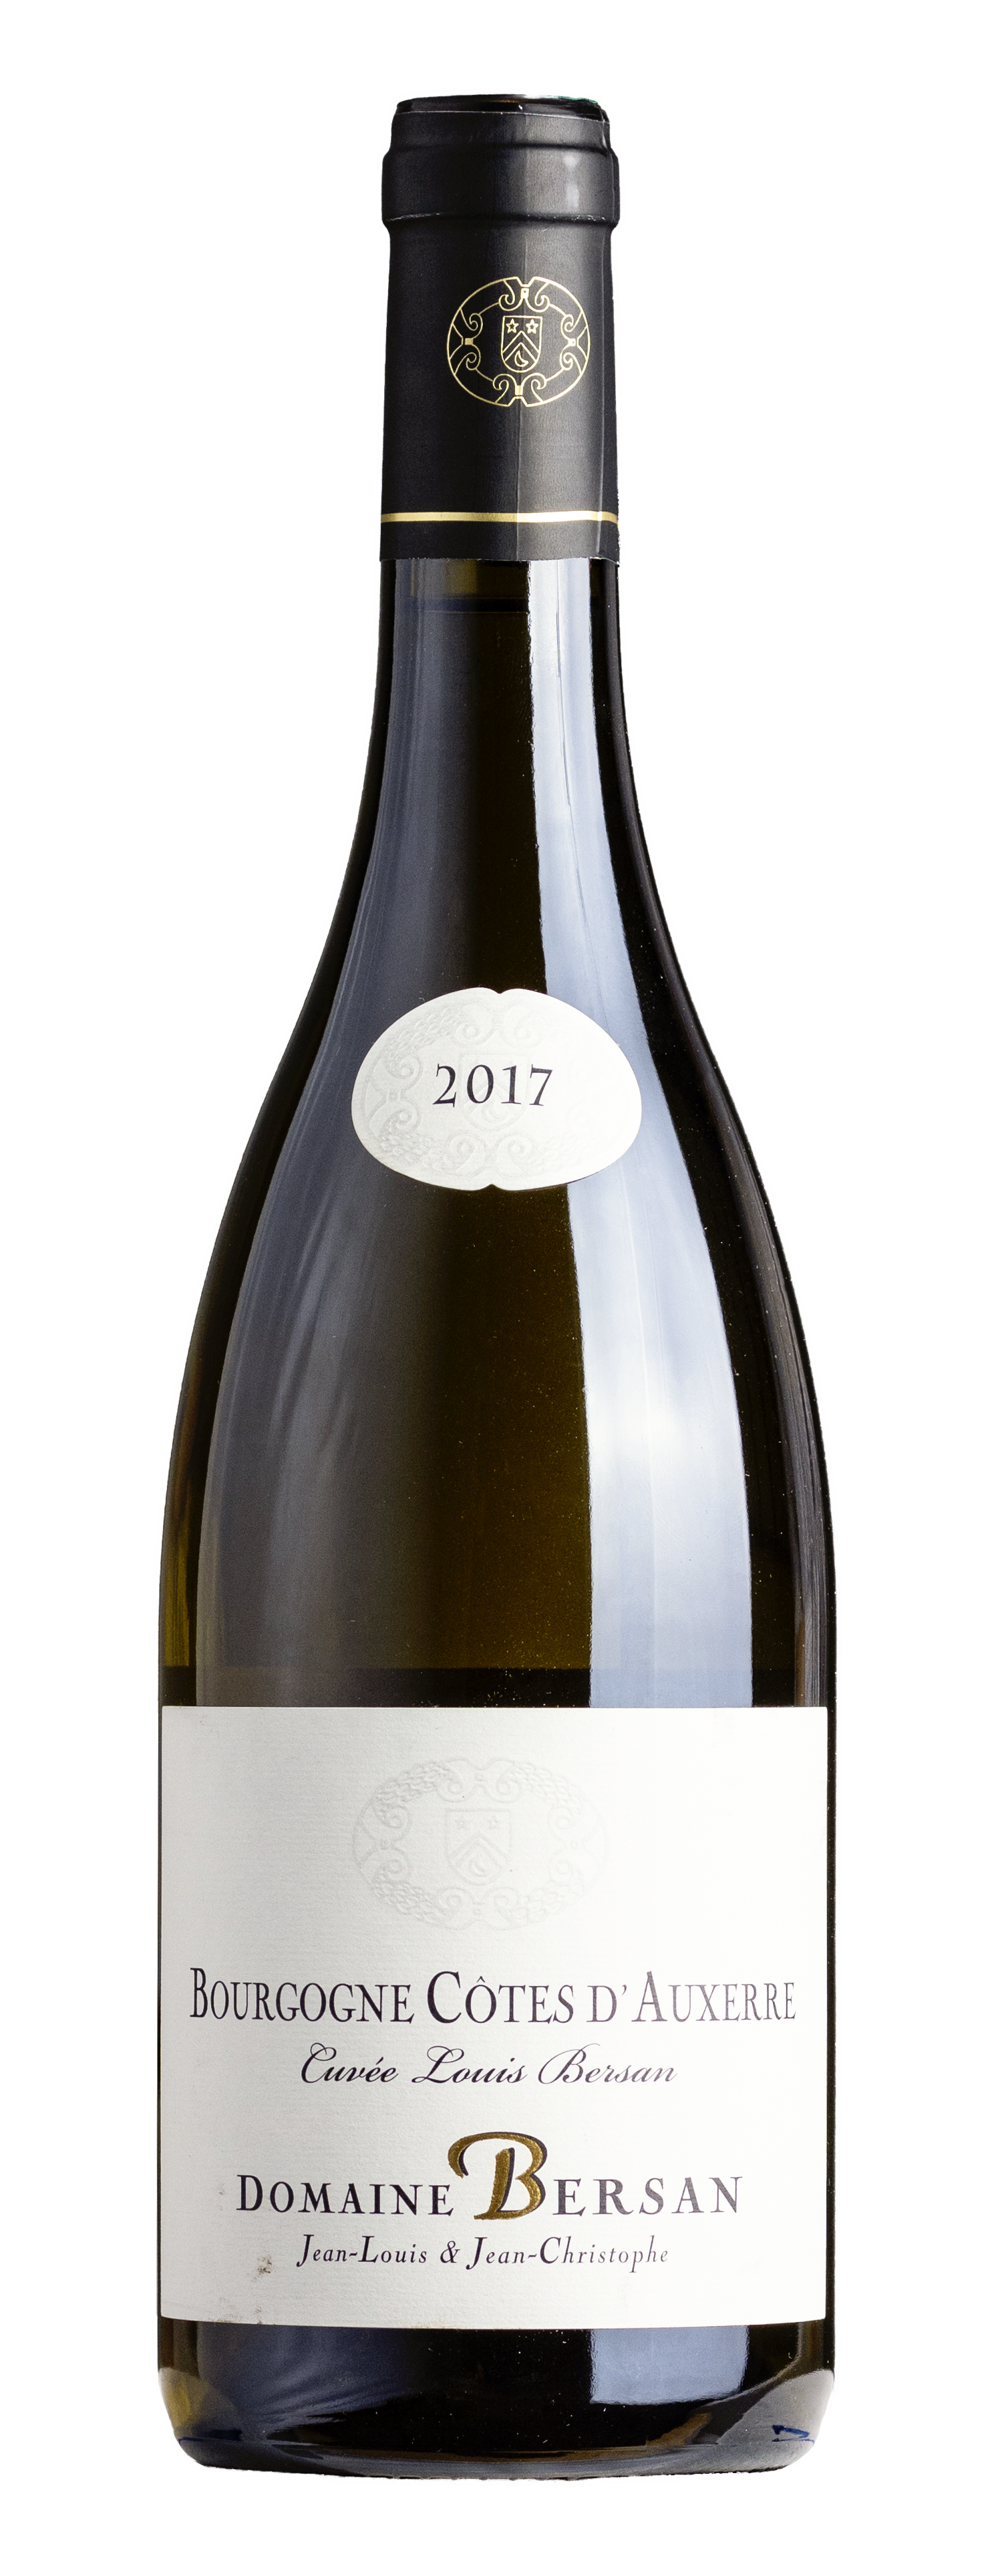 Bourgogne Côtes d'Auxerre AOC Blanc Cuvée Louis Bersan 2017